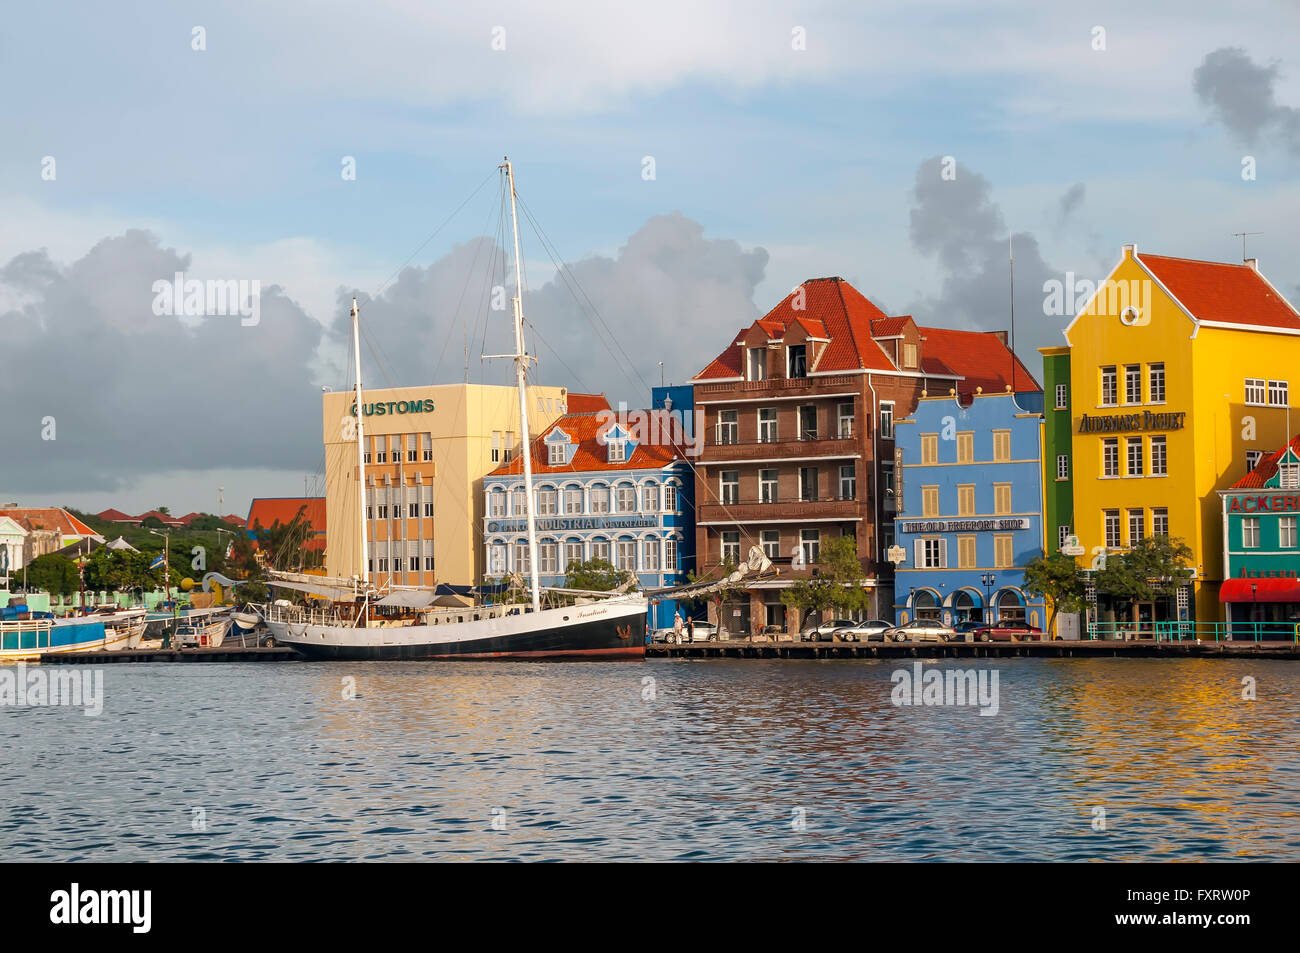 L'architecture néerlandaise et cafés de la waterfront sur le côté de Punda Willemstad Curacao Banque D'Images